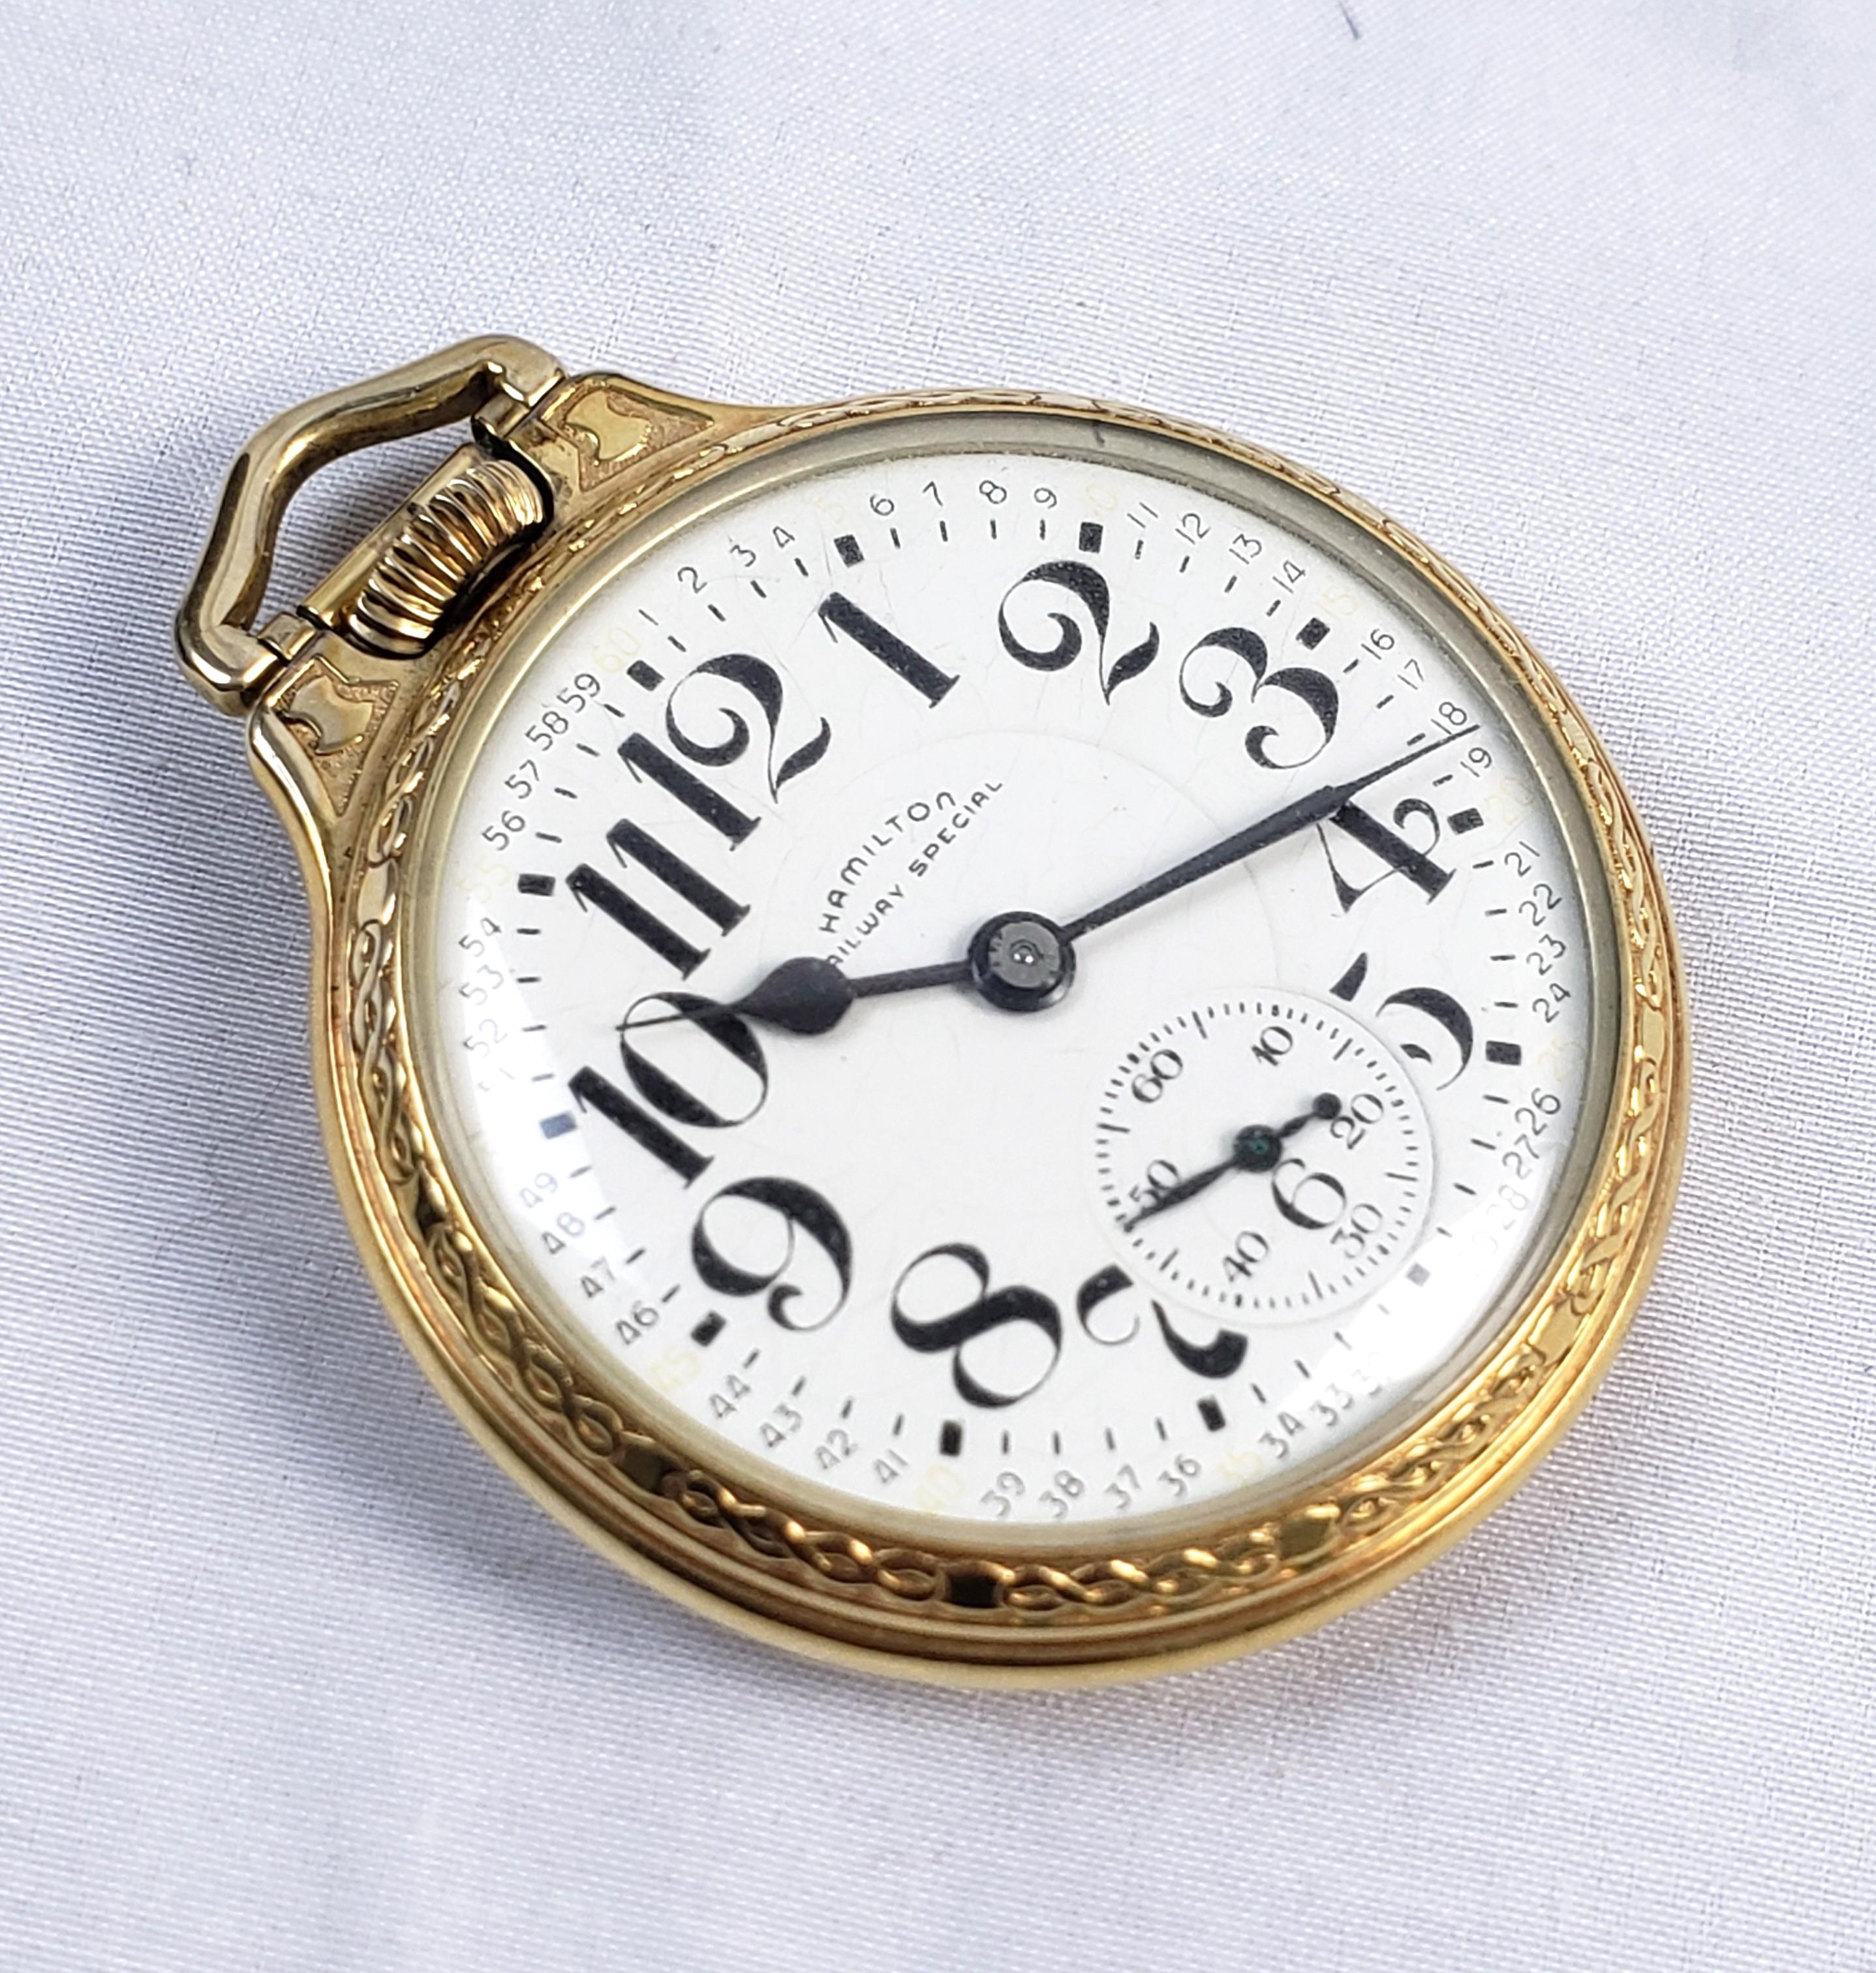 Diese antike Taschenuhr wurde von der bekannten Uhrenfirma Hamilton in den Vereinigten Staaten um 1920 hergestellt. Die Uhr ist in gutem Zustand und hat ein weißes Porzellanzifferblatt mit großen arabischen Ziffern. Das Gehäuse ist mit Gold gefüllt